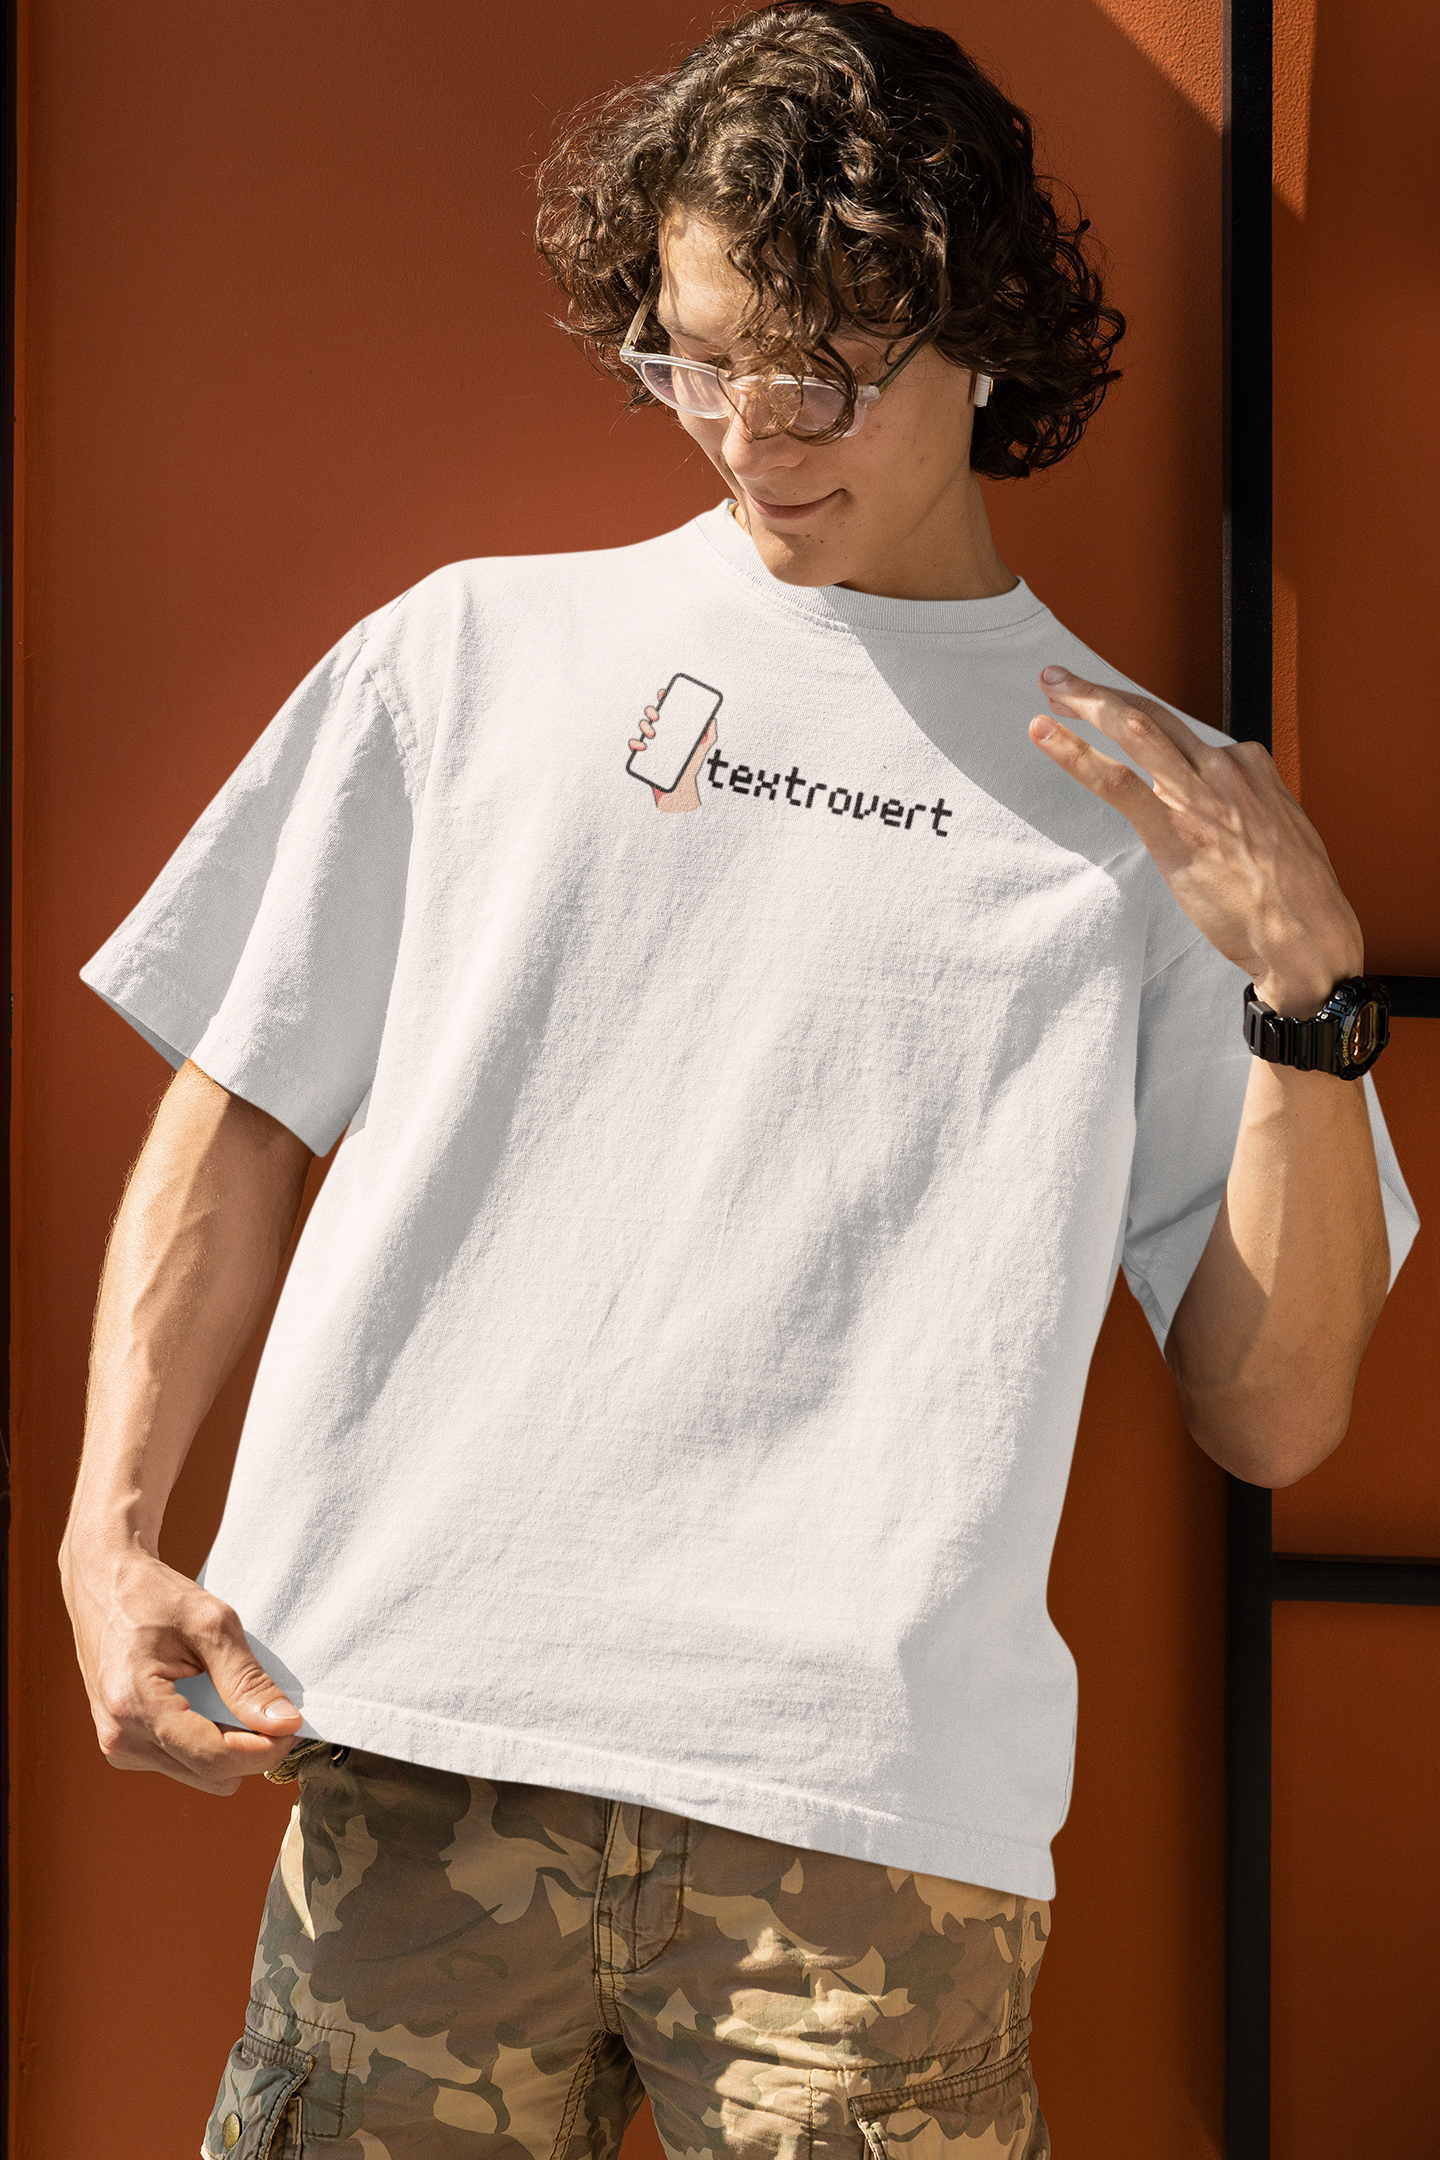 Unisex Textrovert Oversized T-Shirt